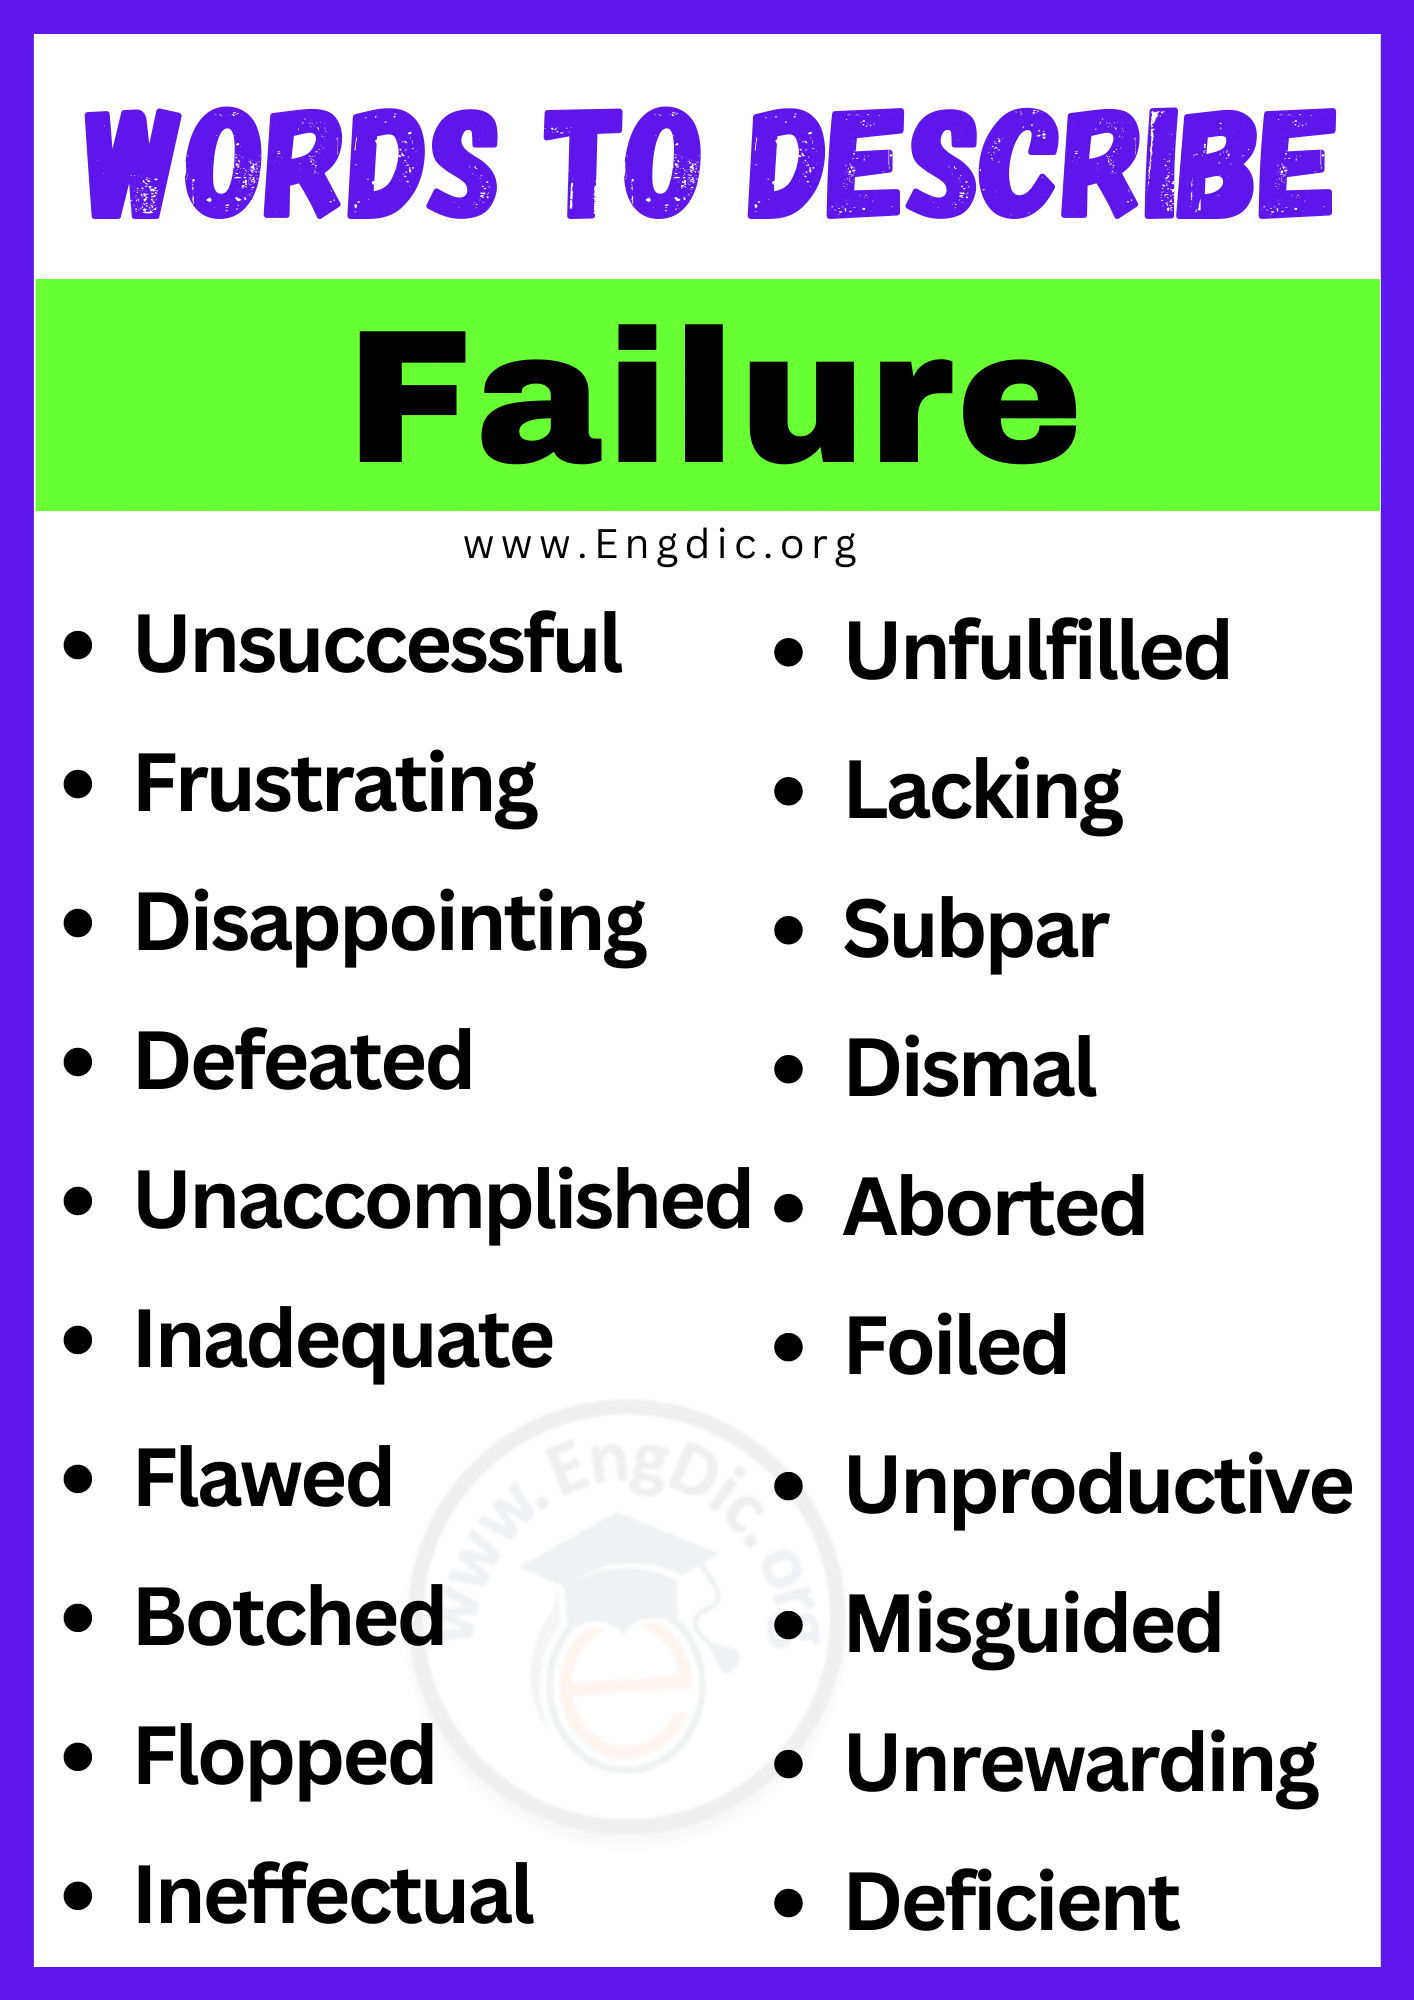 Words to Describe Failure